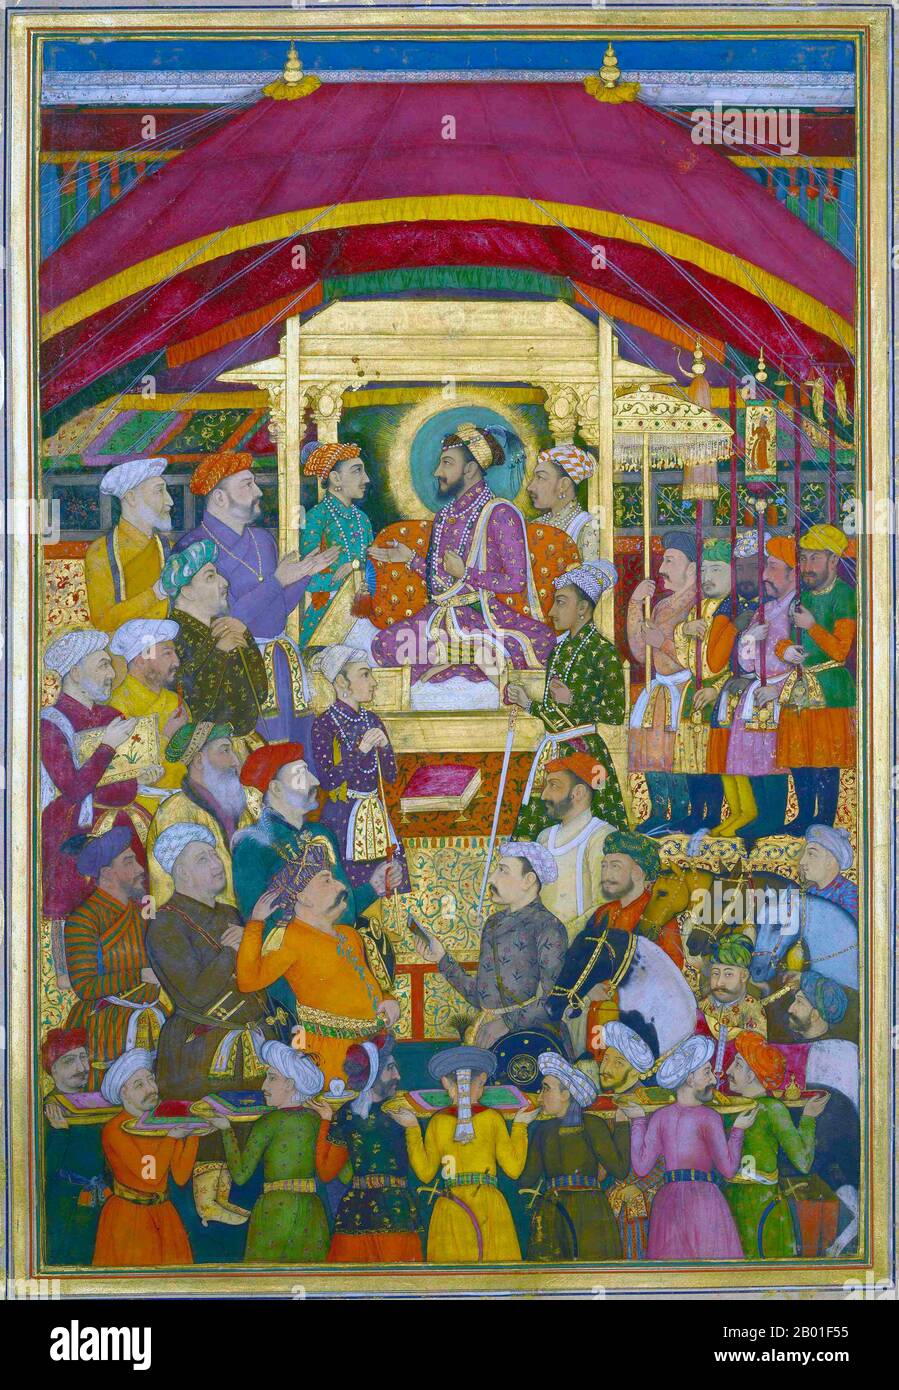 Inde: Shah Jahan (5 janvier 1592 - 22 janvier 1666) reçoit l'ambassadeur perse, MuhammadAli Beg, pendant les célébrations du nouvel an. Aquarelle peinte par Jalal Quli (fl. 17th Century), c. 1635-1650. Shah Jahan fut l'empereur de l'Empire moghol dans le sous-continent indien de 1628 à 1658. Le nom Shah Jahan vient du persan signifiant « Roi du monde ». Il fut le cinquième empereur moghol après Babur, Humayun, Akbar et Jahangir. La période de son règne a été l'âge d'or de l'architecture de Mughal. Shah Jahan a érigé de nombreux monuments splendides, dont le plus célèbre est le Taj Mahal. Banque D'Images